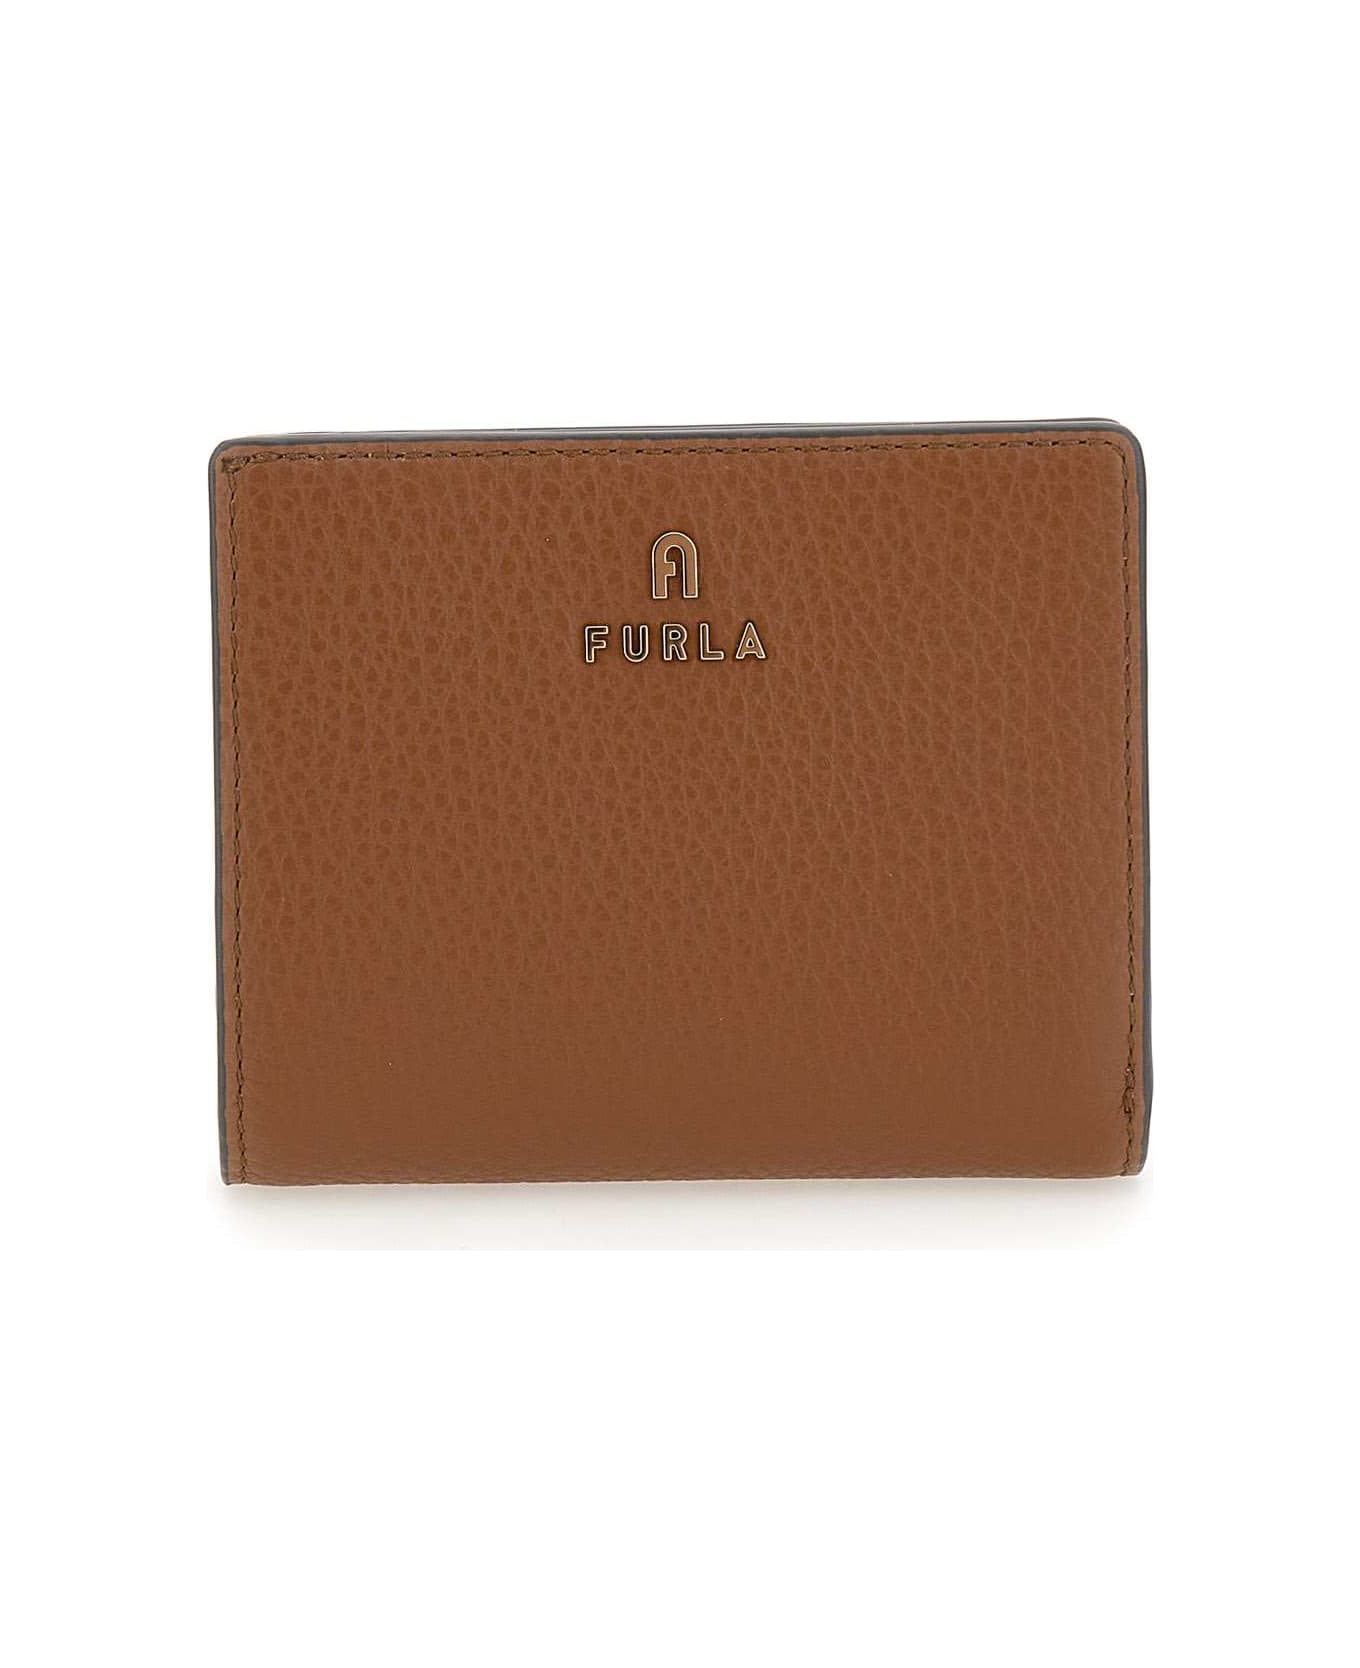 Furla 'camelia' Leather Wallet - Marrone